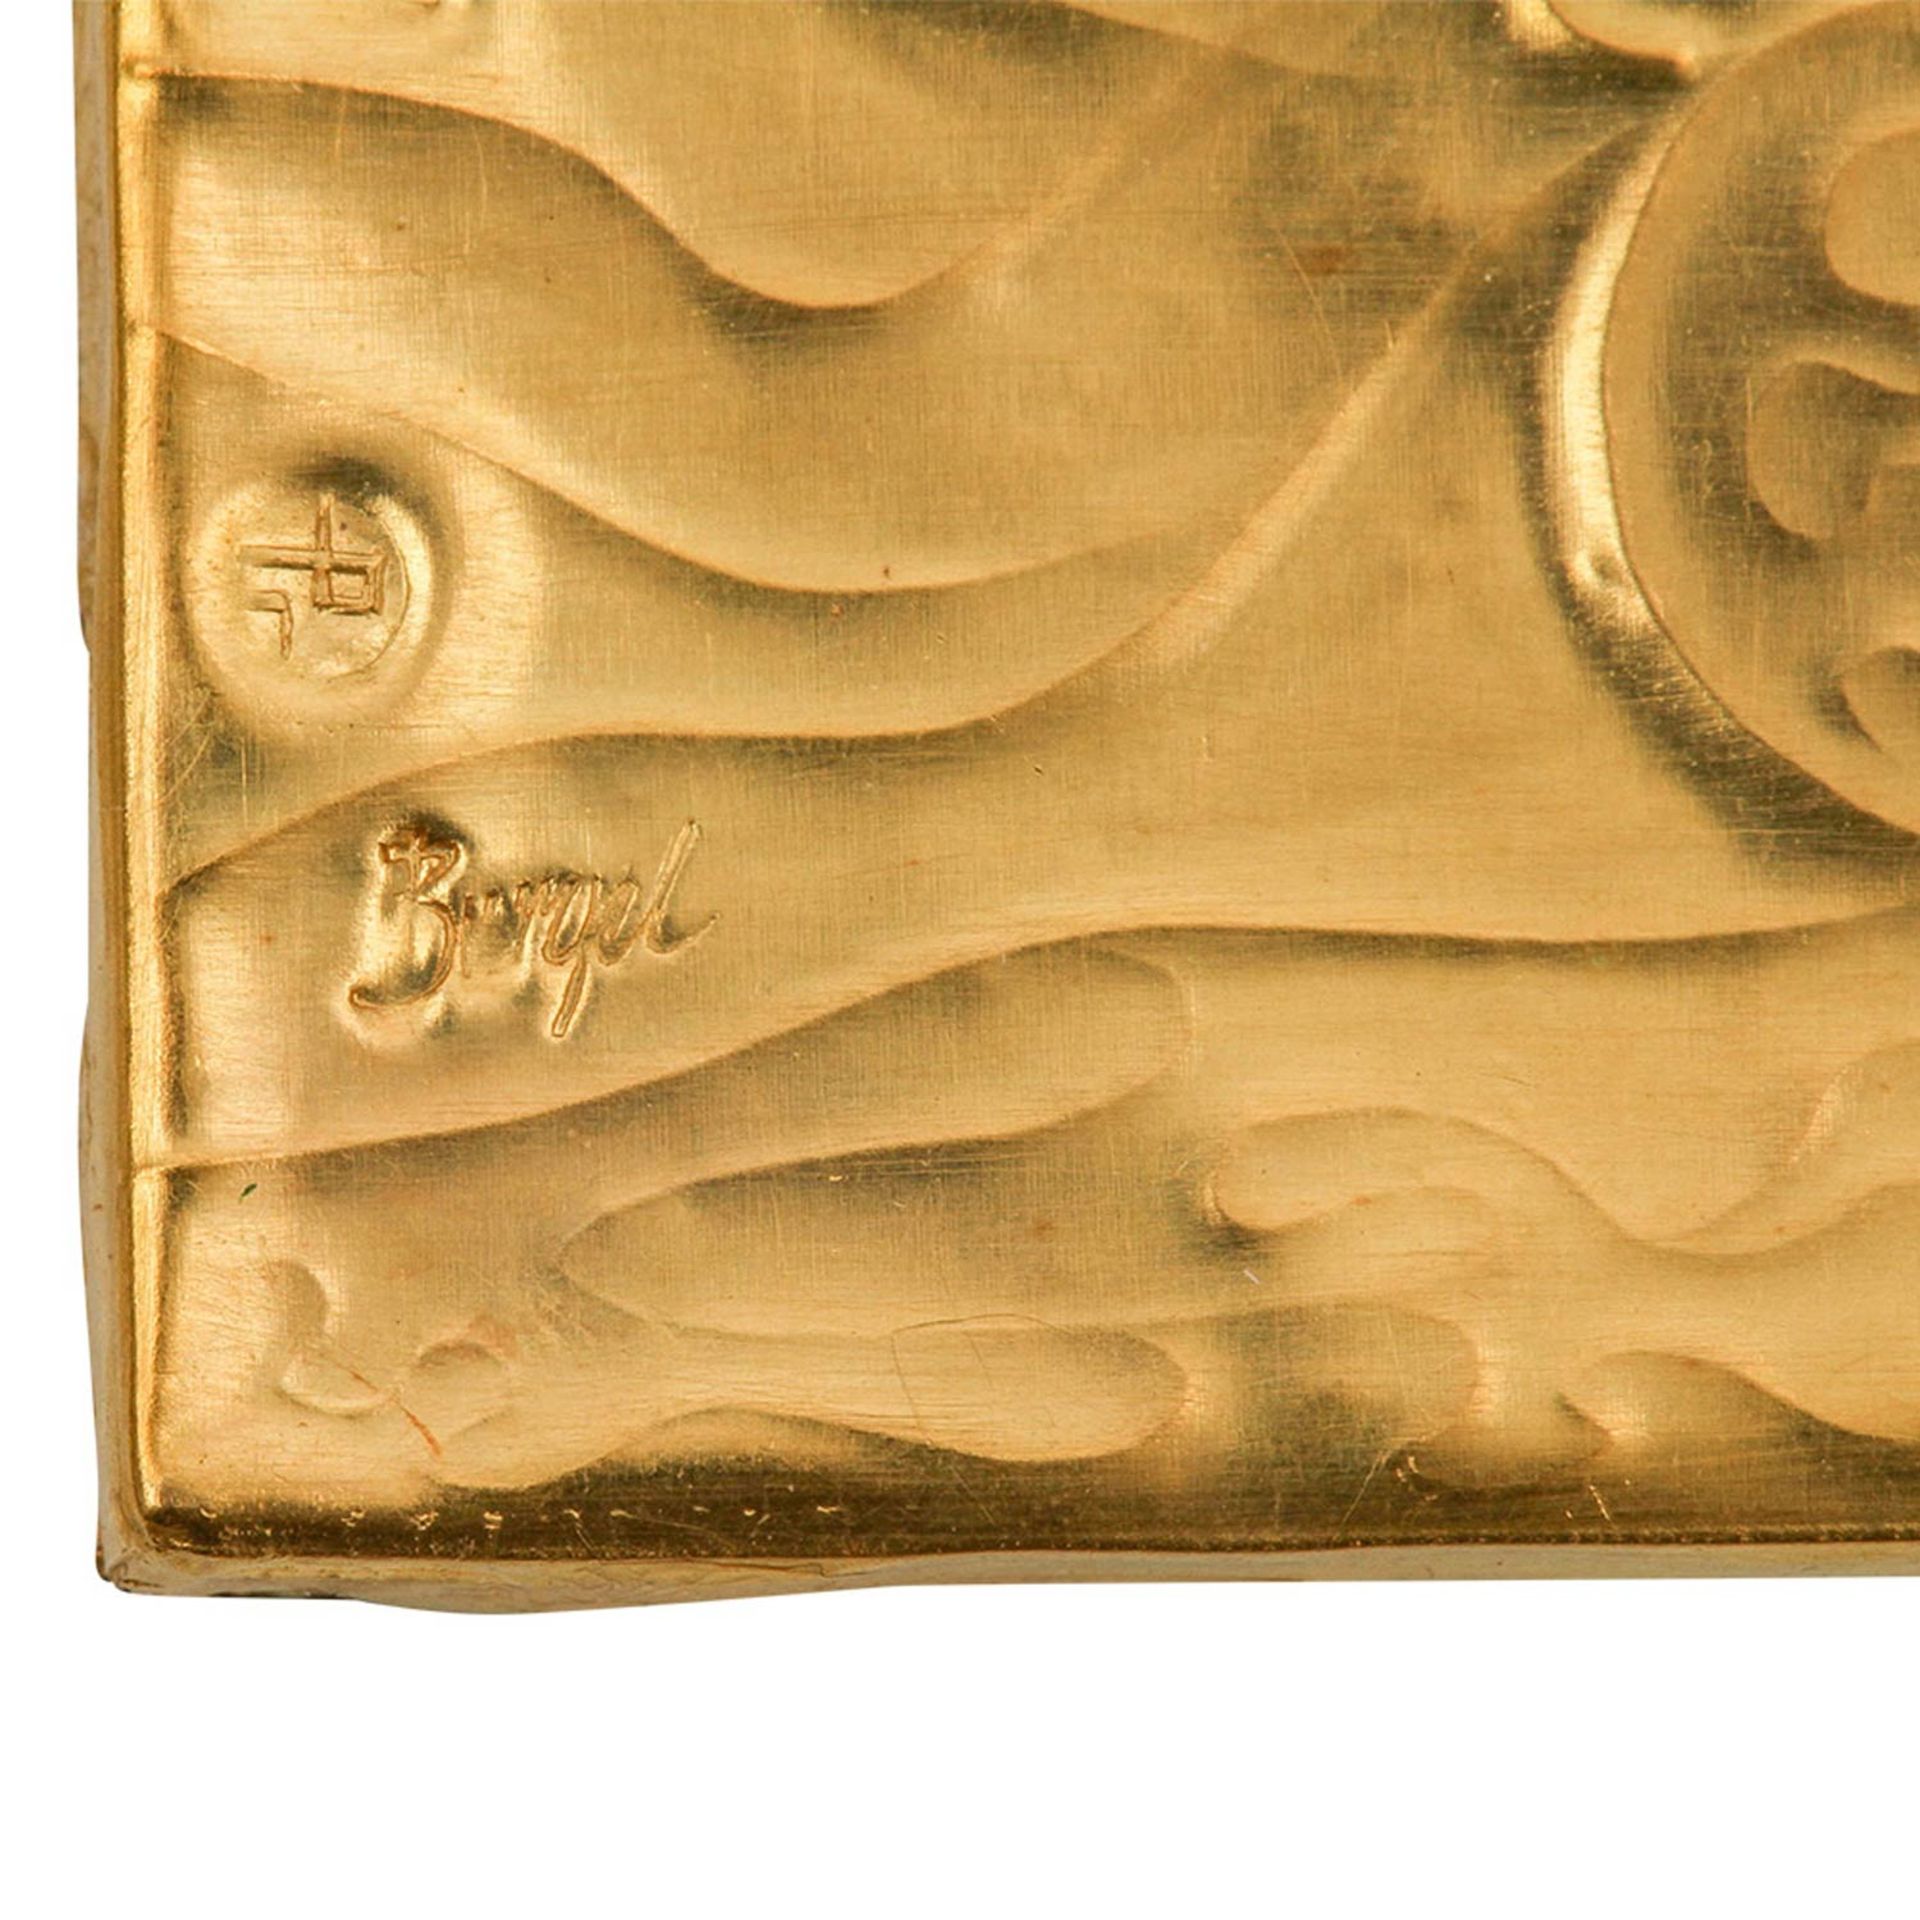 Goldminiatur "Semé" (1966) von E. BURGEL,Gold 900, gerieben + ziseliert, quadratisch, auf Acryl - Bild 5 aus 6